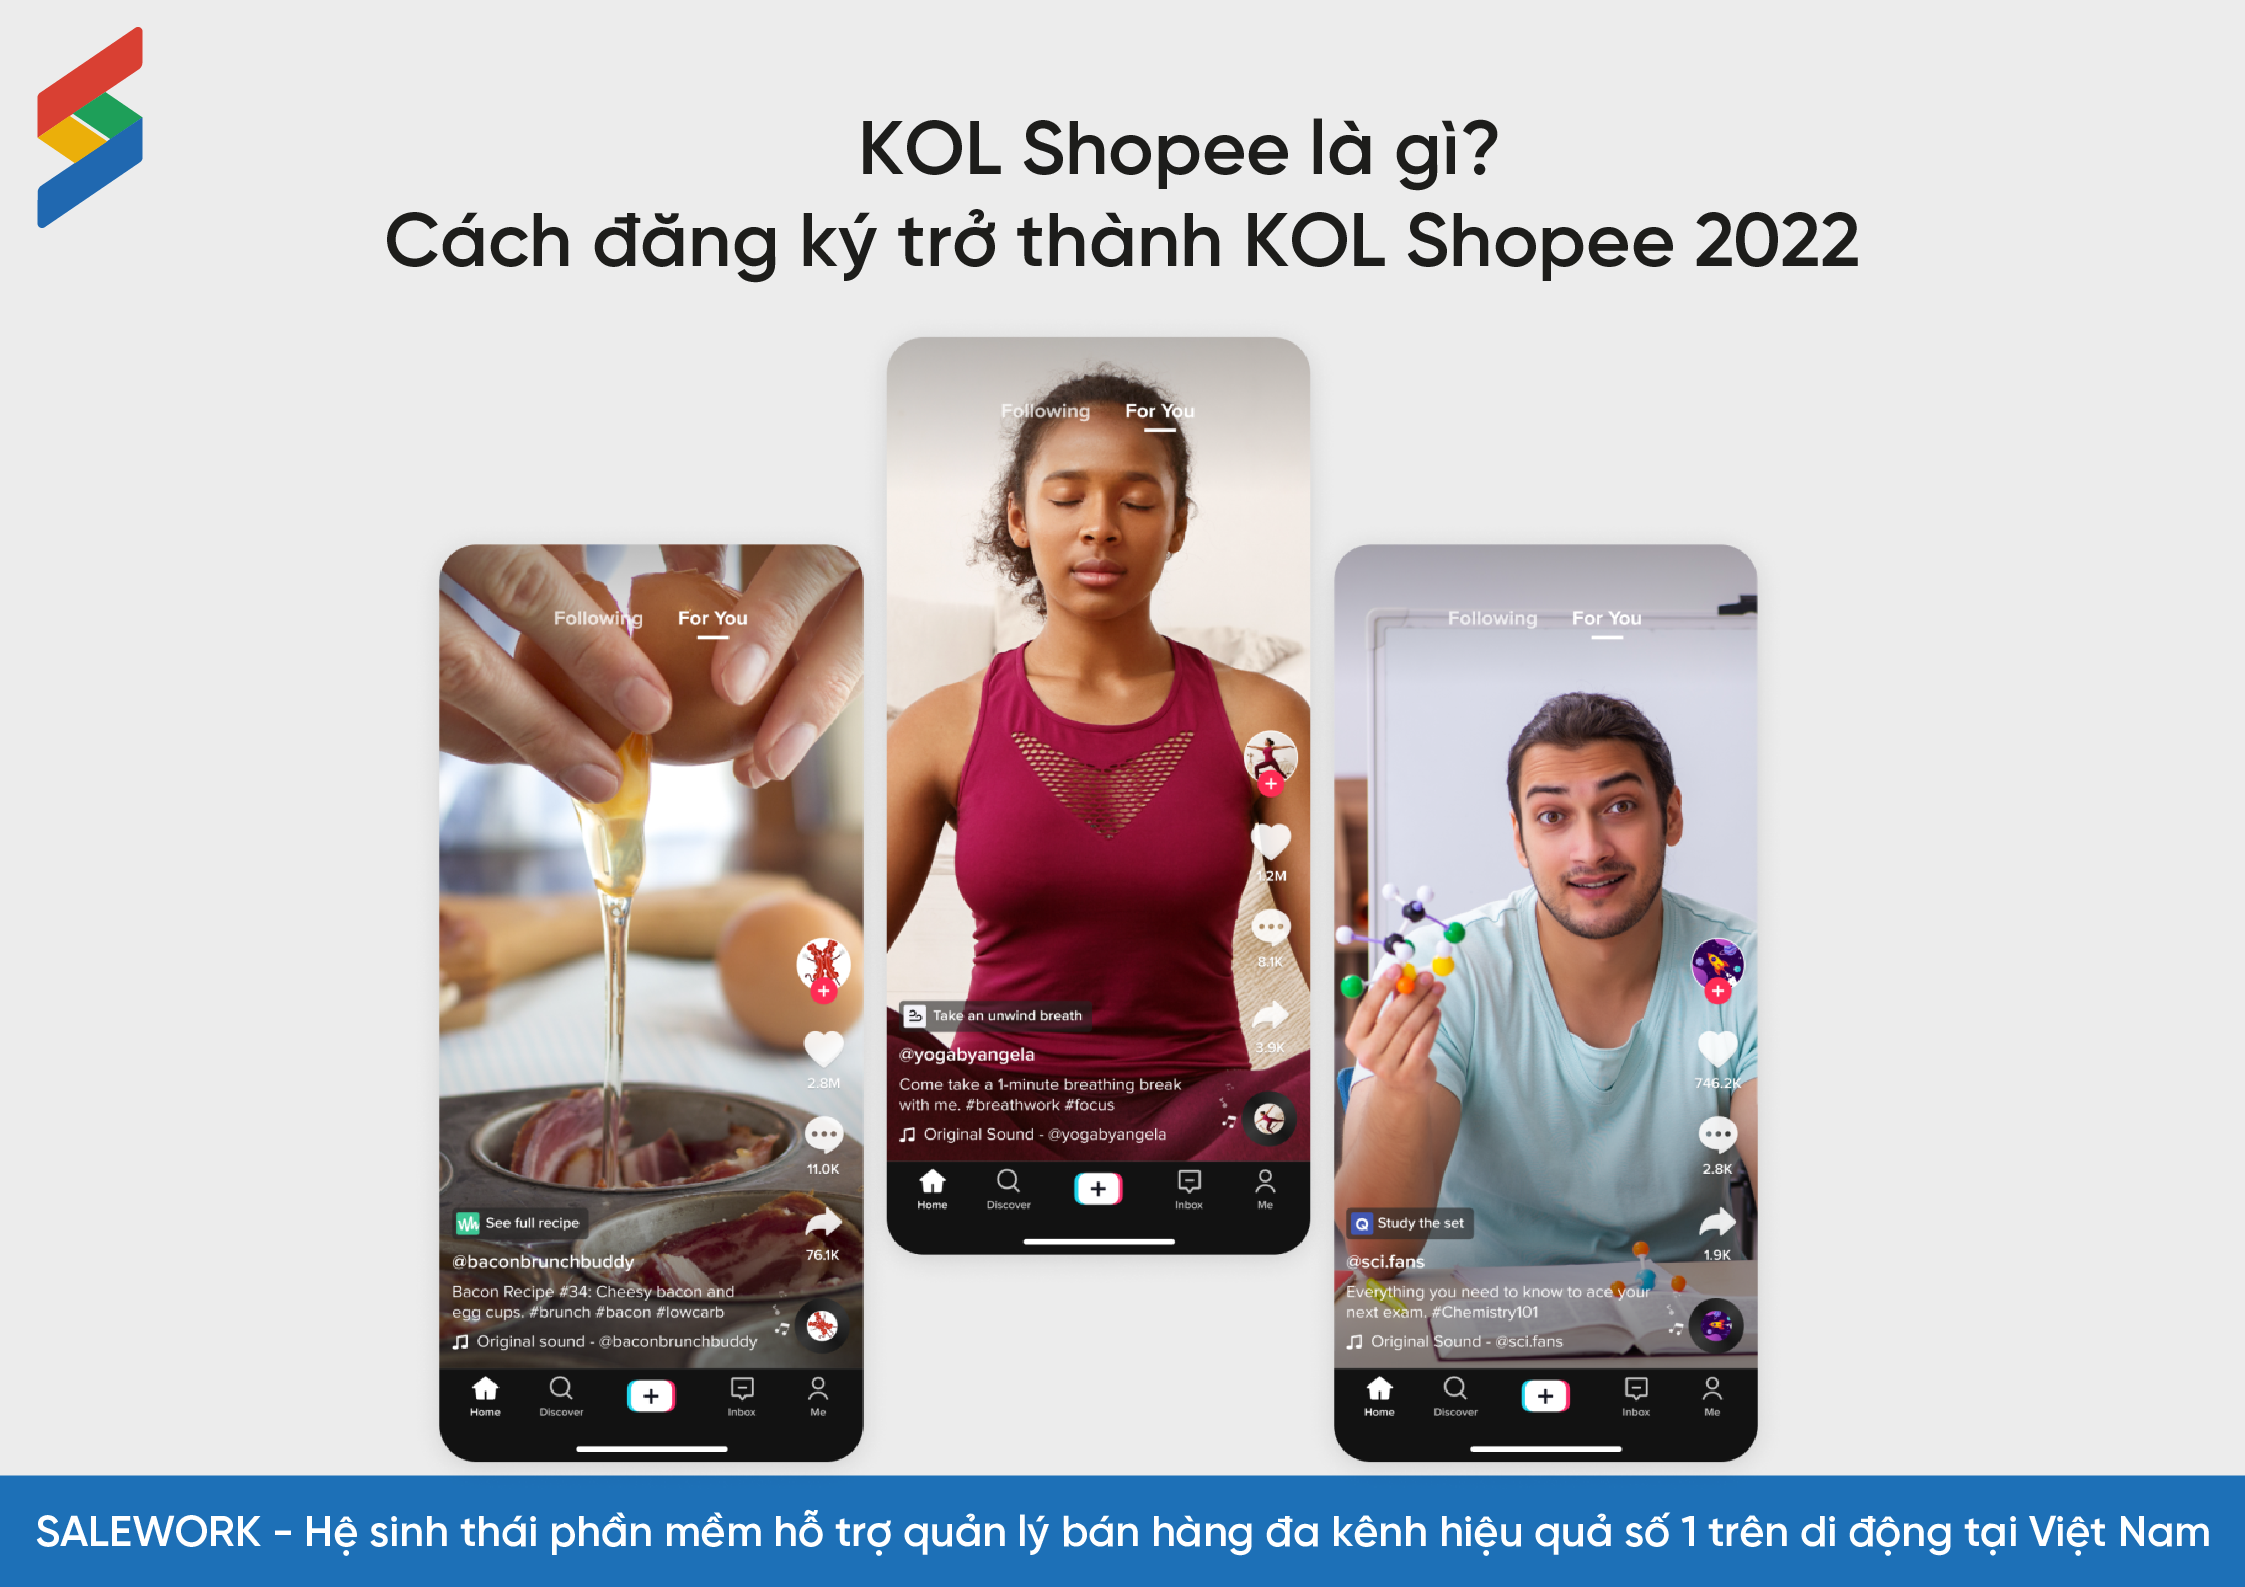 KOL Shopee là gì? Cách đăng ký trở thành KOL Shopee 2022 - 9